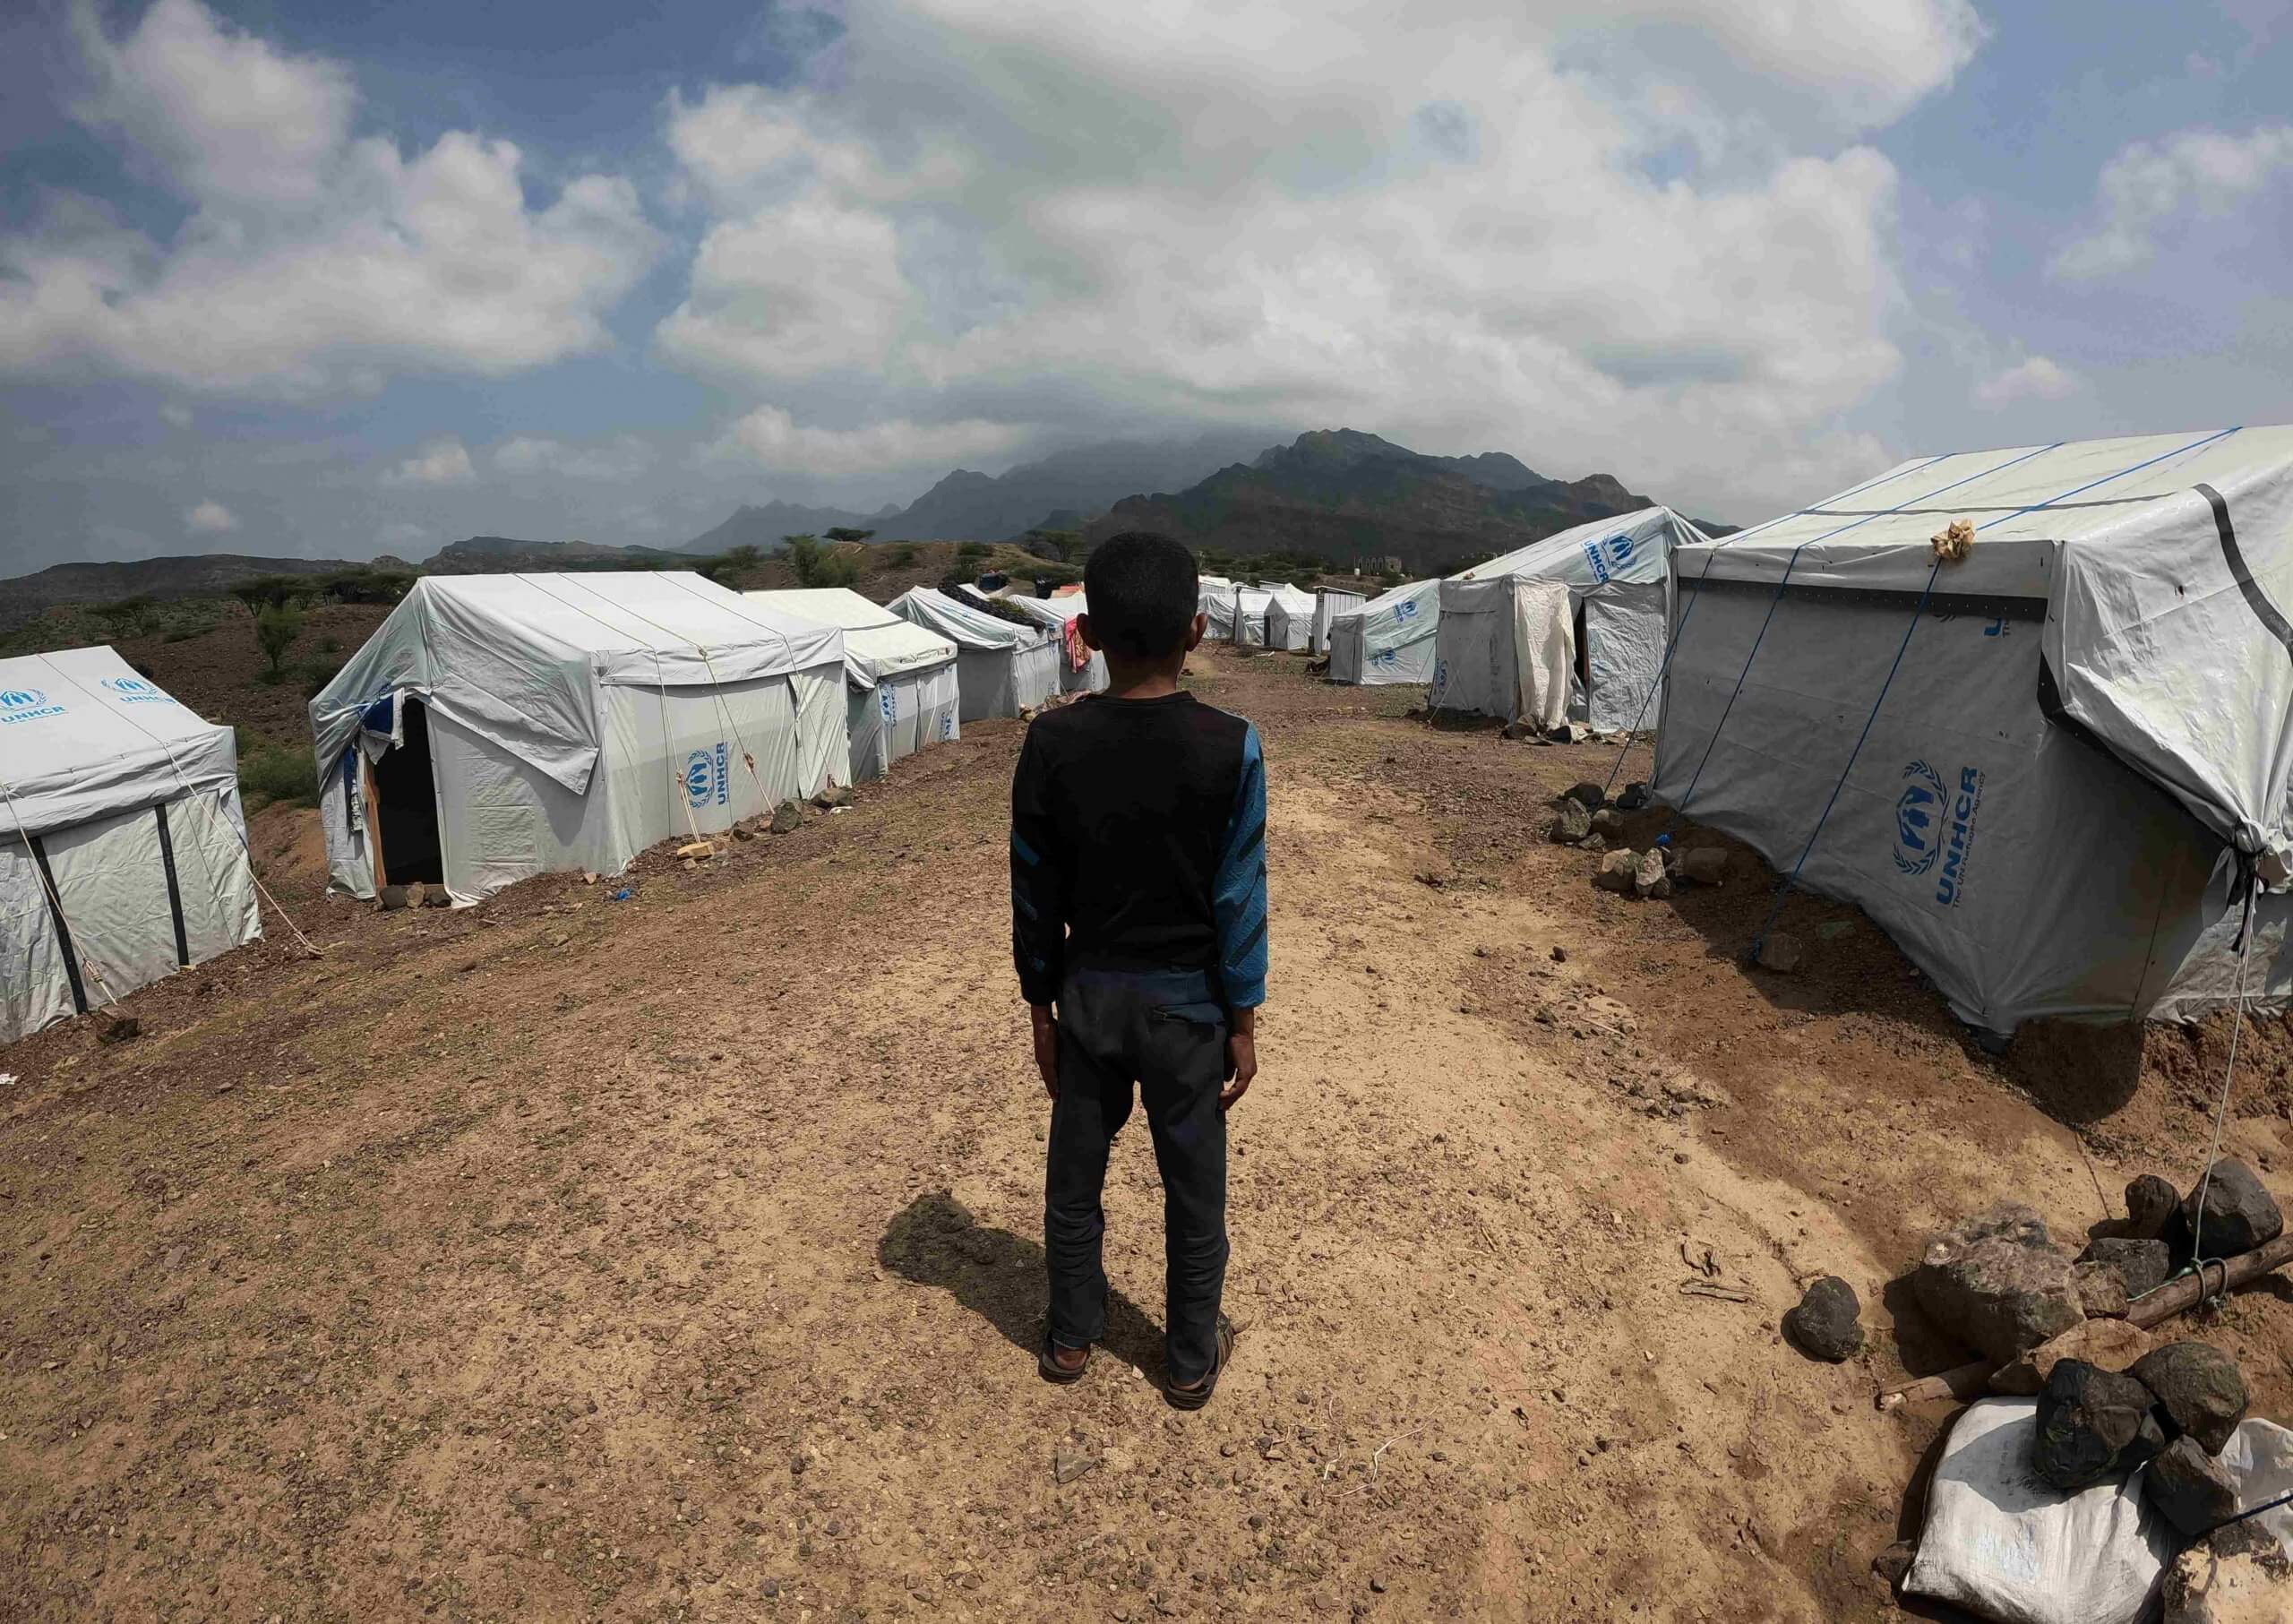 Chlapec hledí na stany v uprchlickém táboře, Jemen.